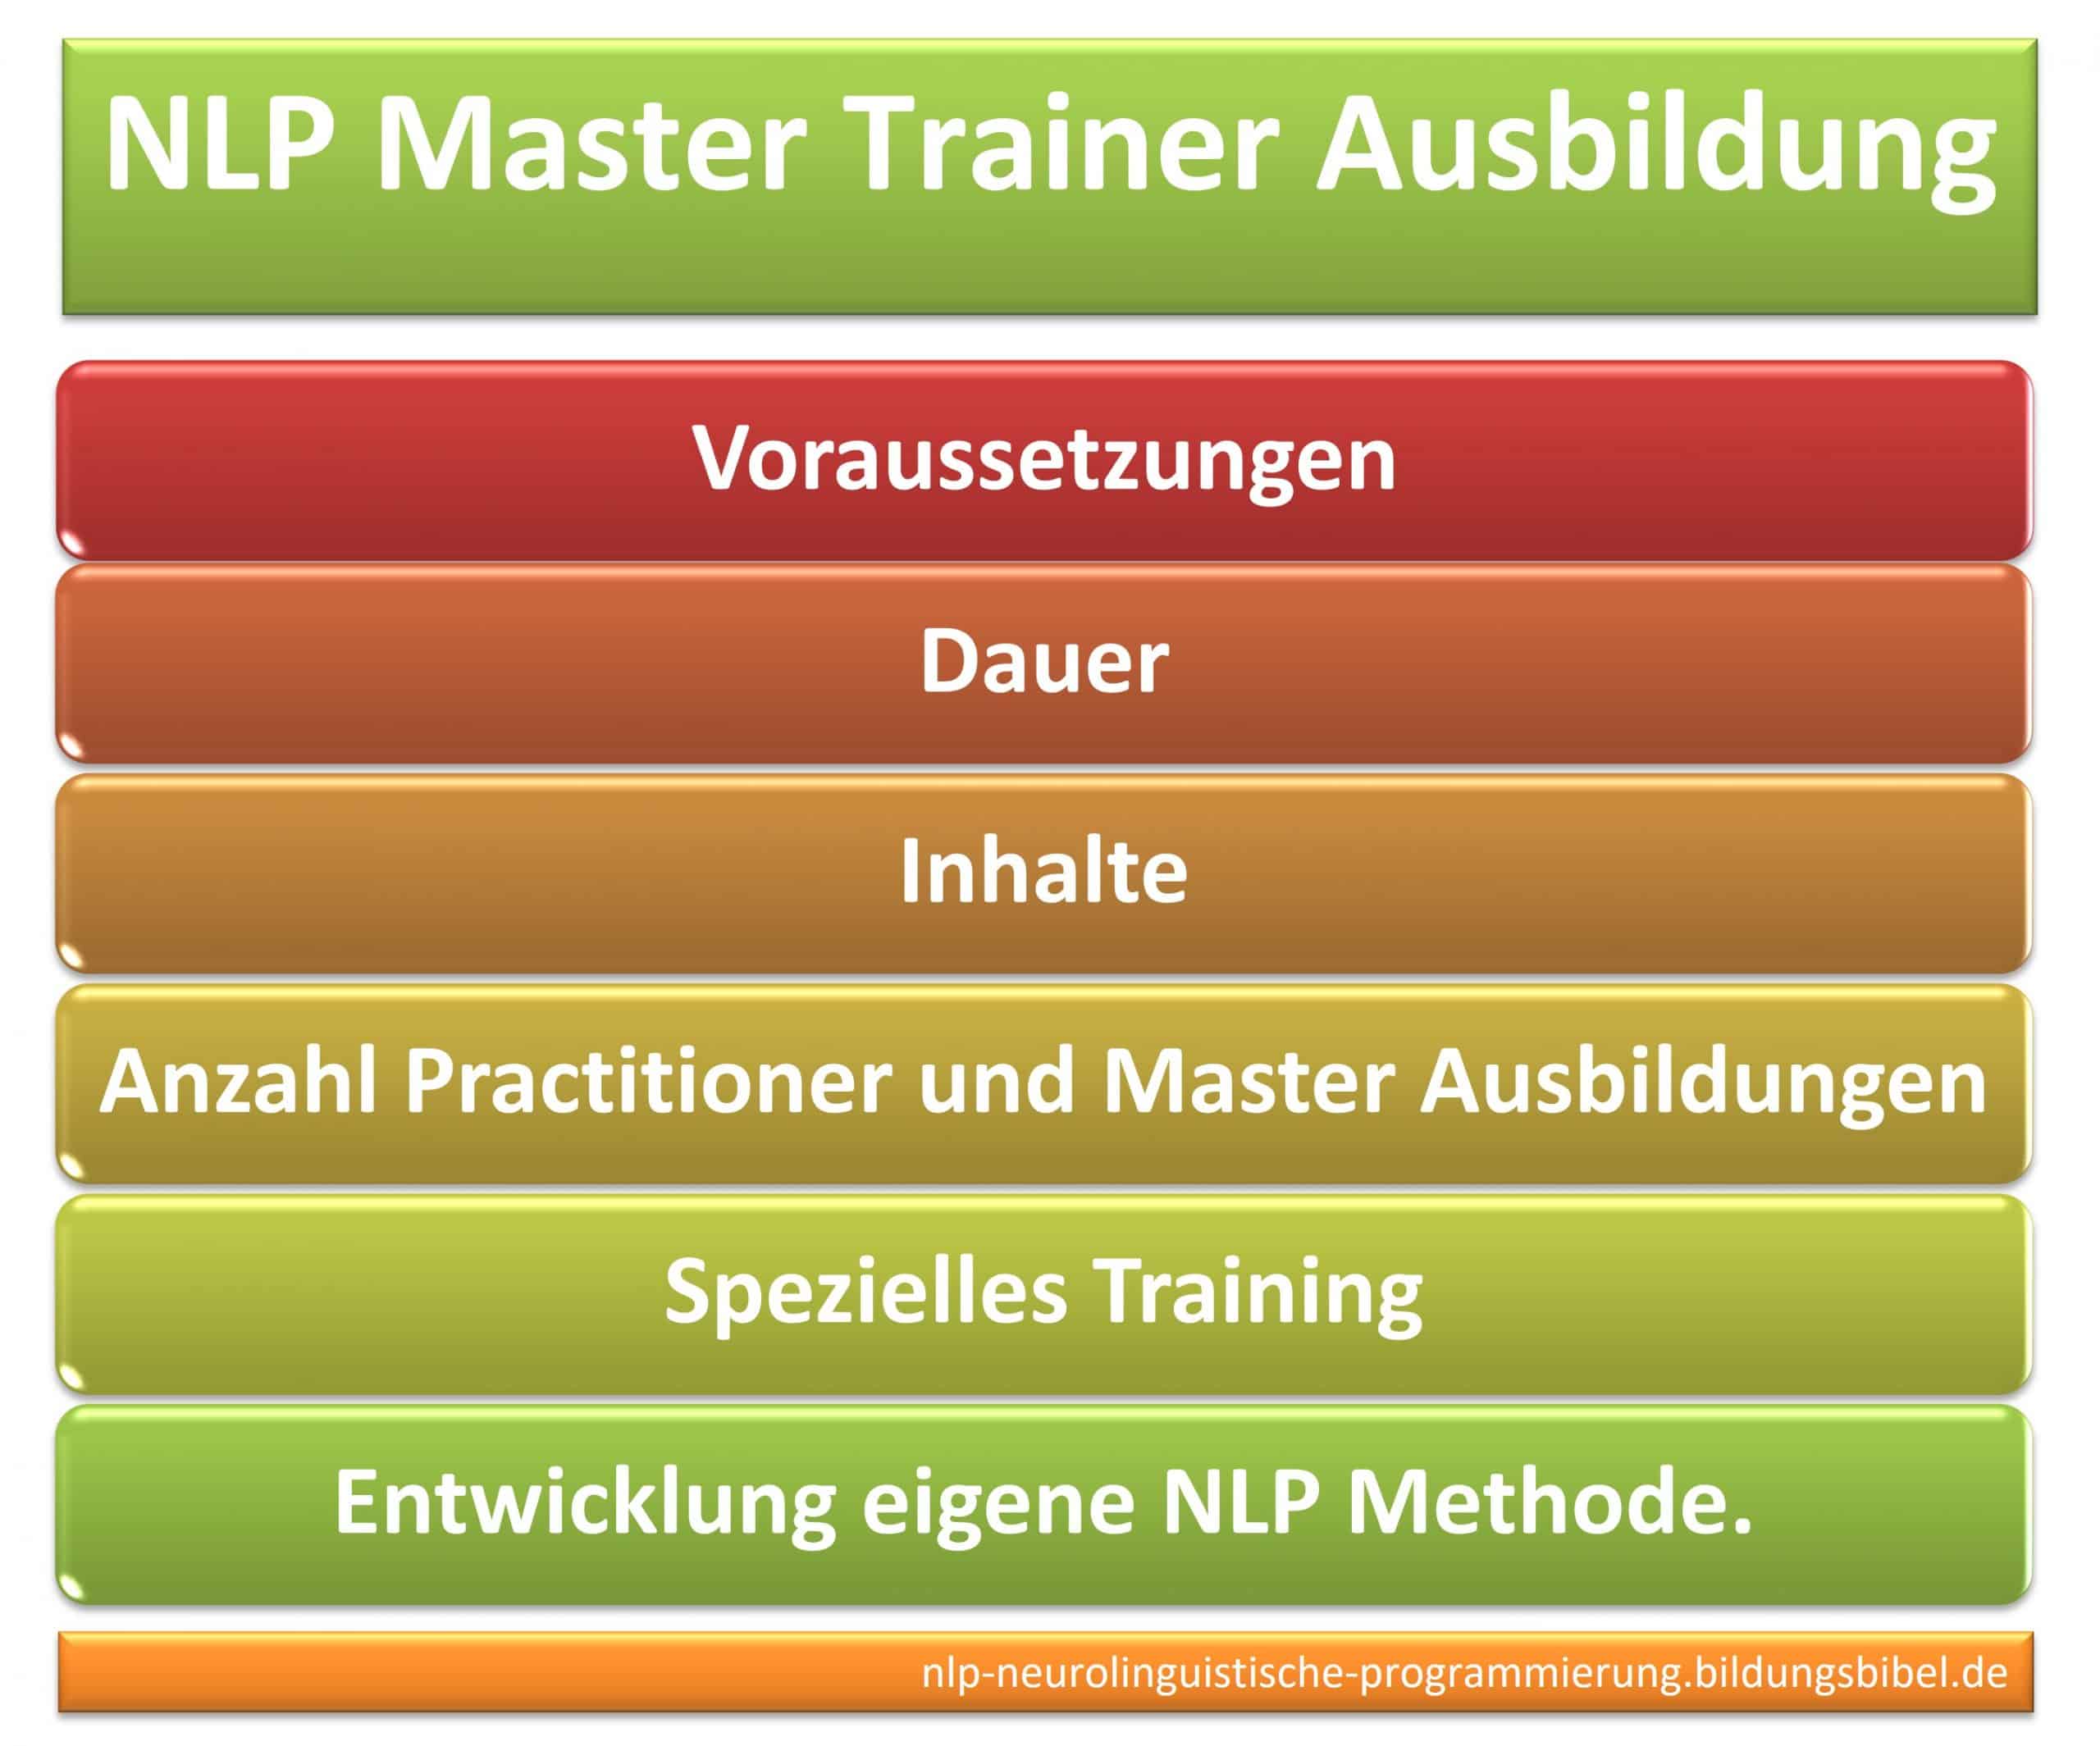 NLP Master Trainer Ausbildung Voraussetzungen, Anzahl Practitioner und Master Ausbildungen und spezielles Training sowie eigene NLP Methode.